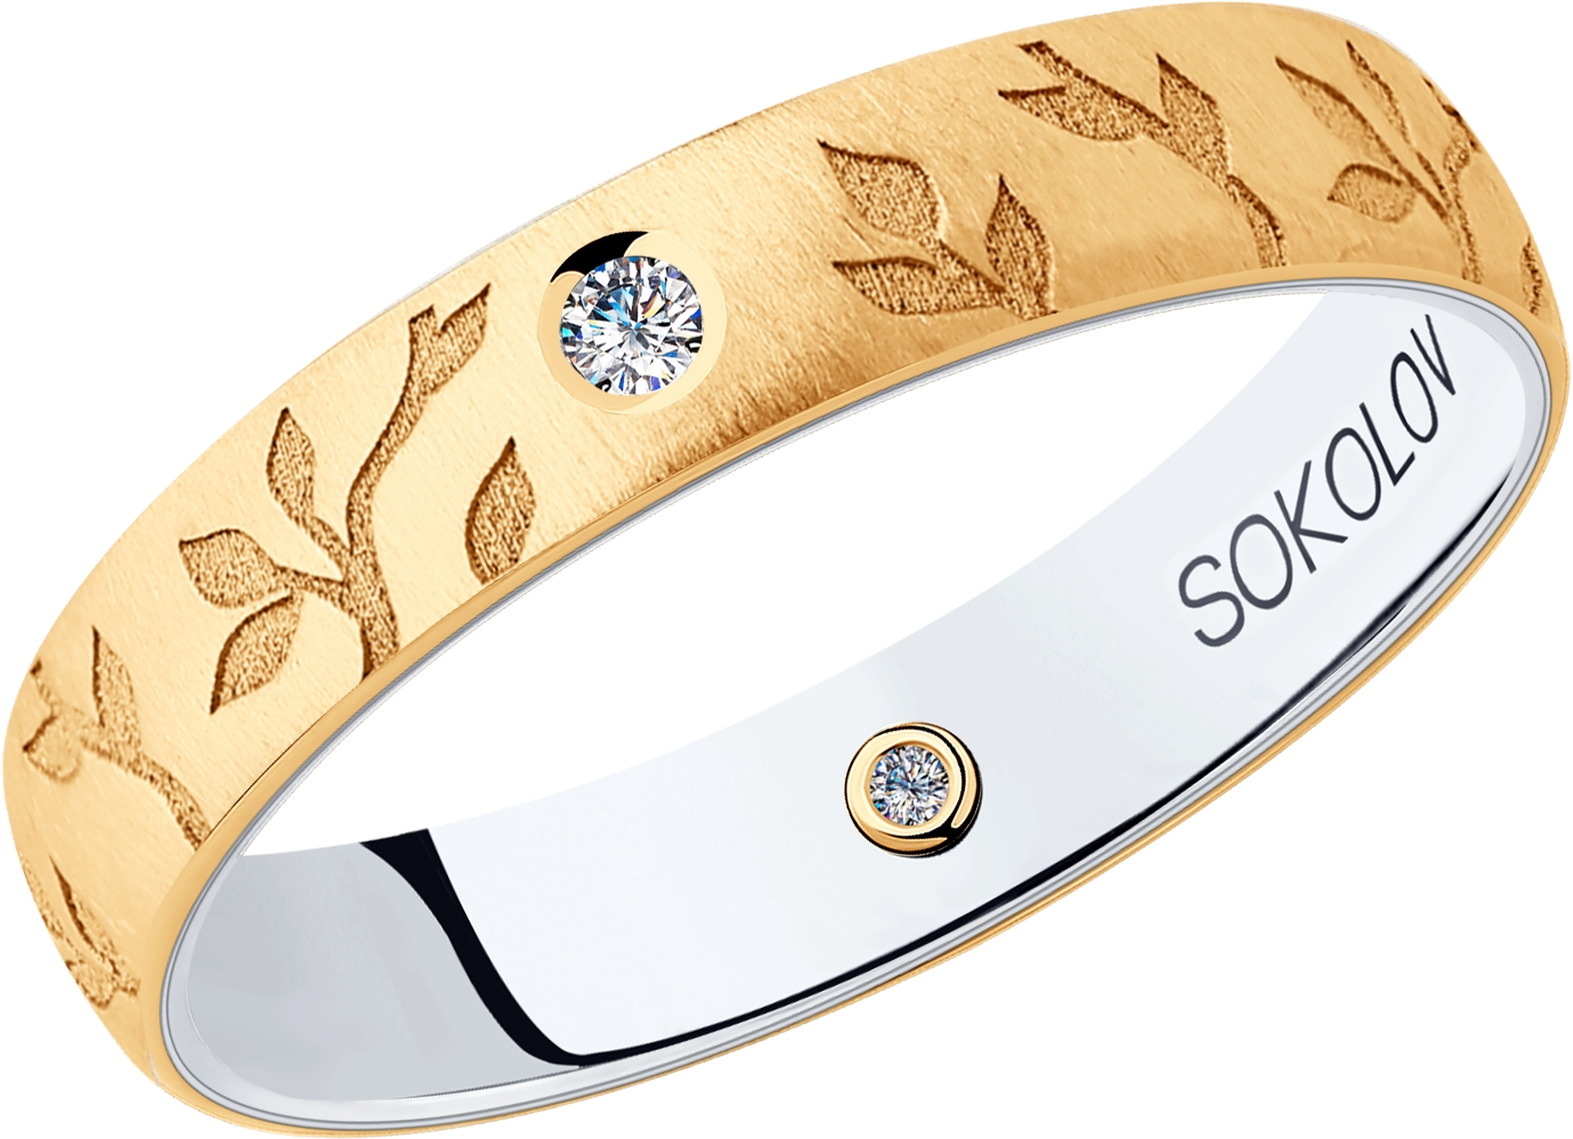 Кольца sokolov. SOKOLOV кольцо из комбинированного золота с бриллиантами 1011402. SOKOLOV кольцо из комбинированного золота с бриллиантами 1014008-01. Золото Соколов 585 пробы кольца. SOKOLOV кольцо 585 золото проба.